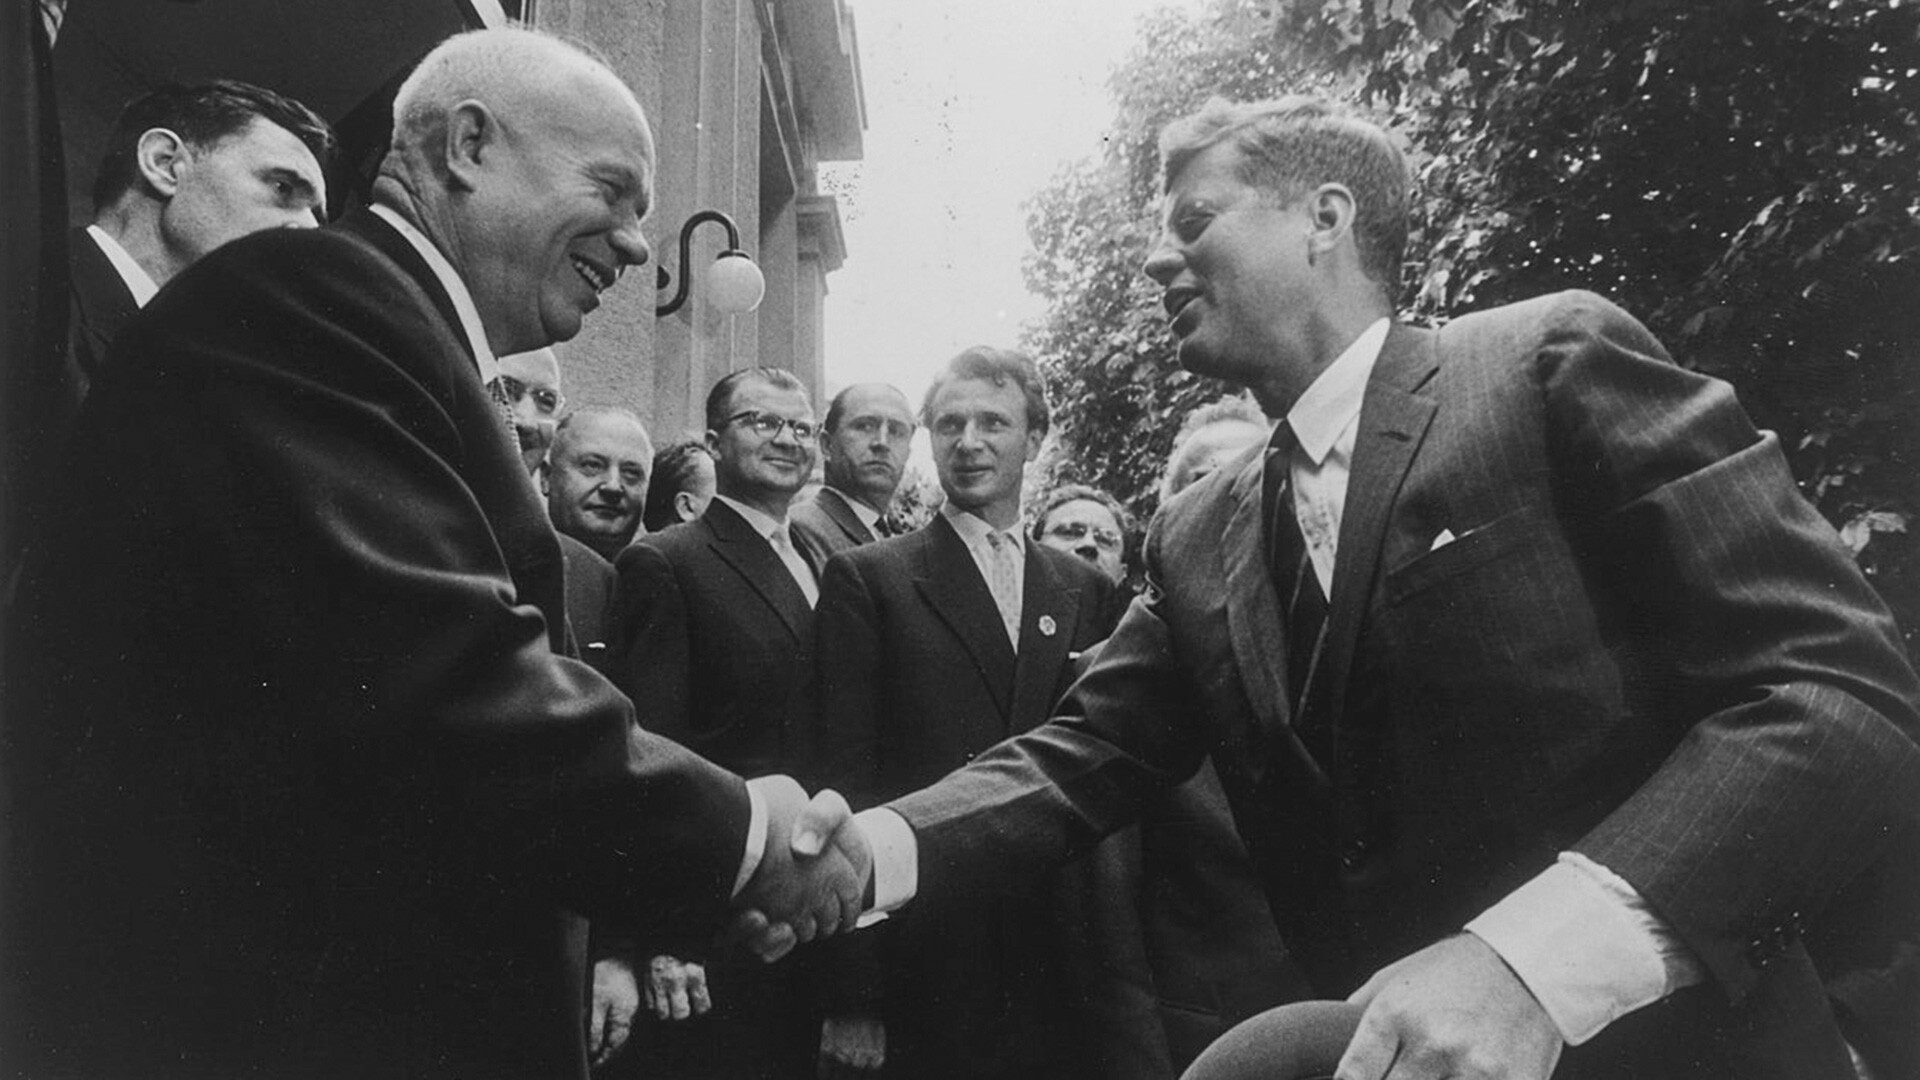 John F. Kennedy shaking hands with Nikita Khrushchev. 